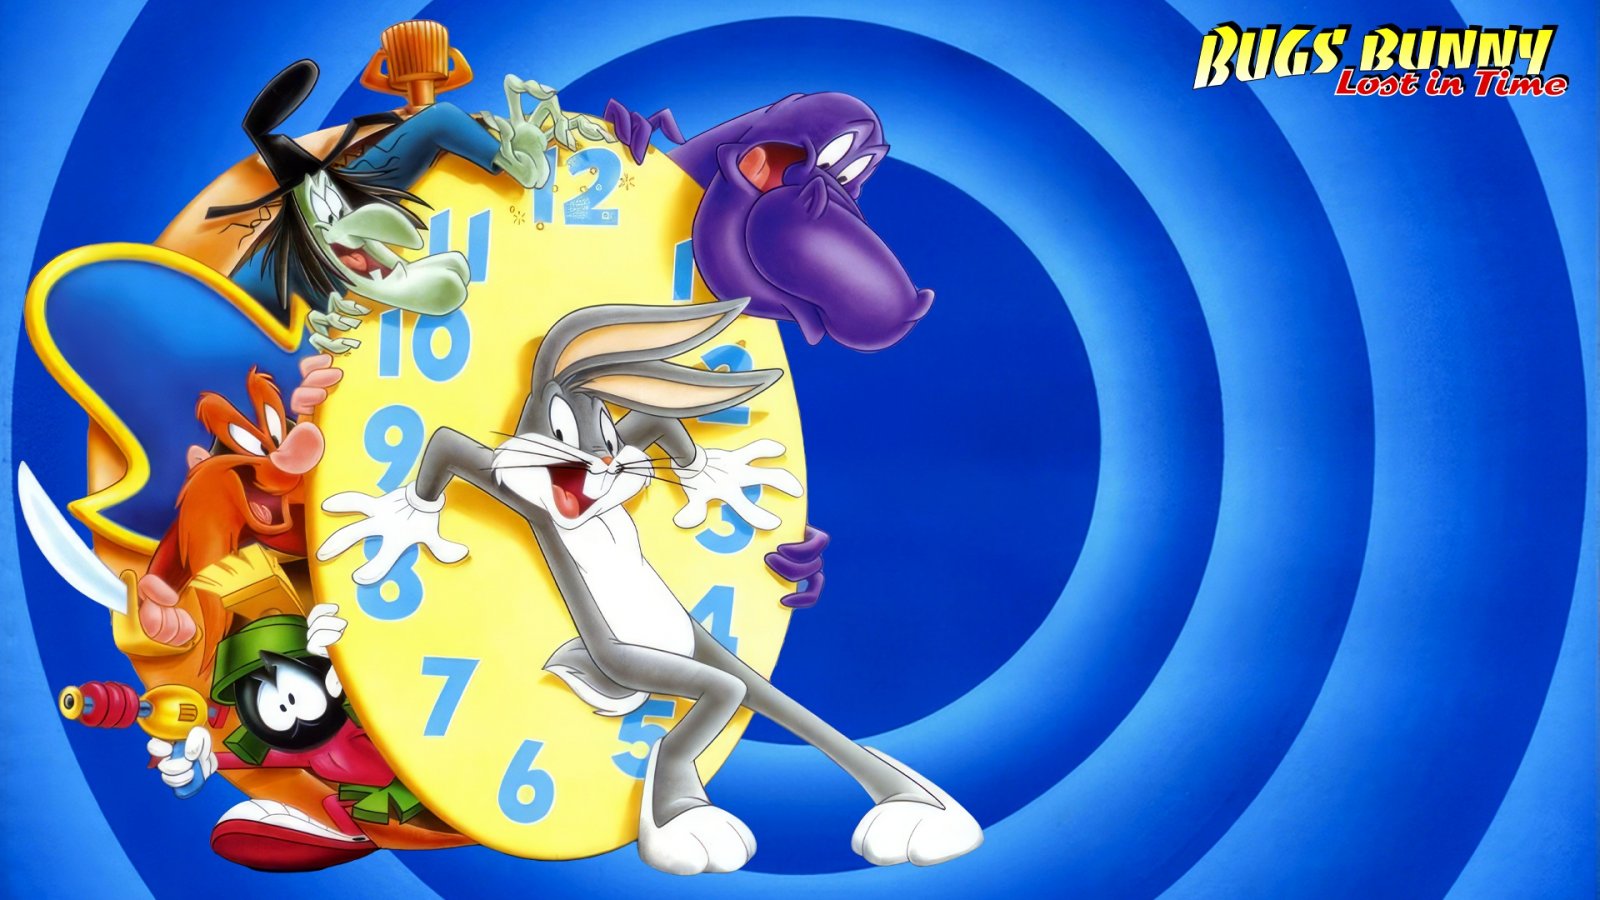 C'era una volta Bugs Bunny: Lost in Time